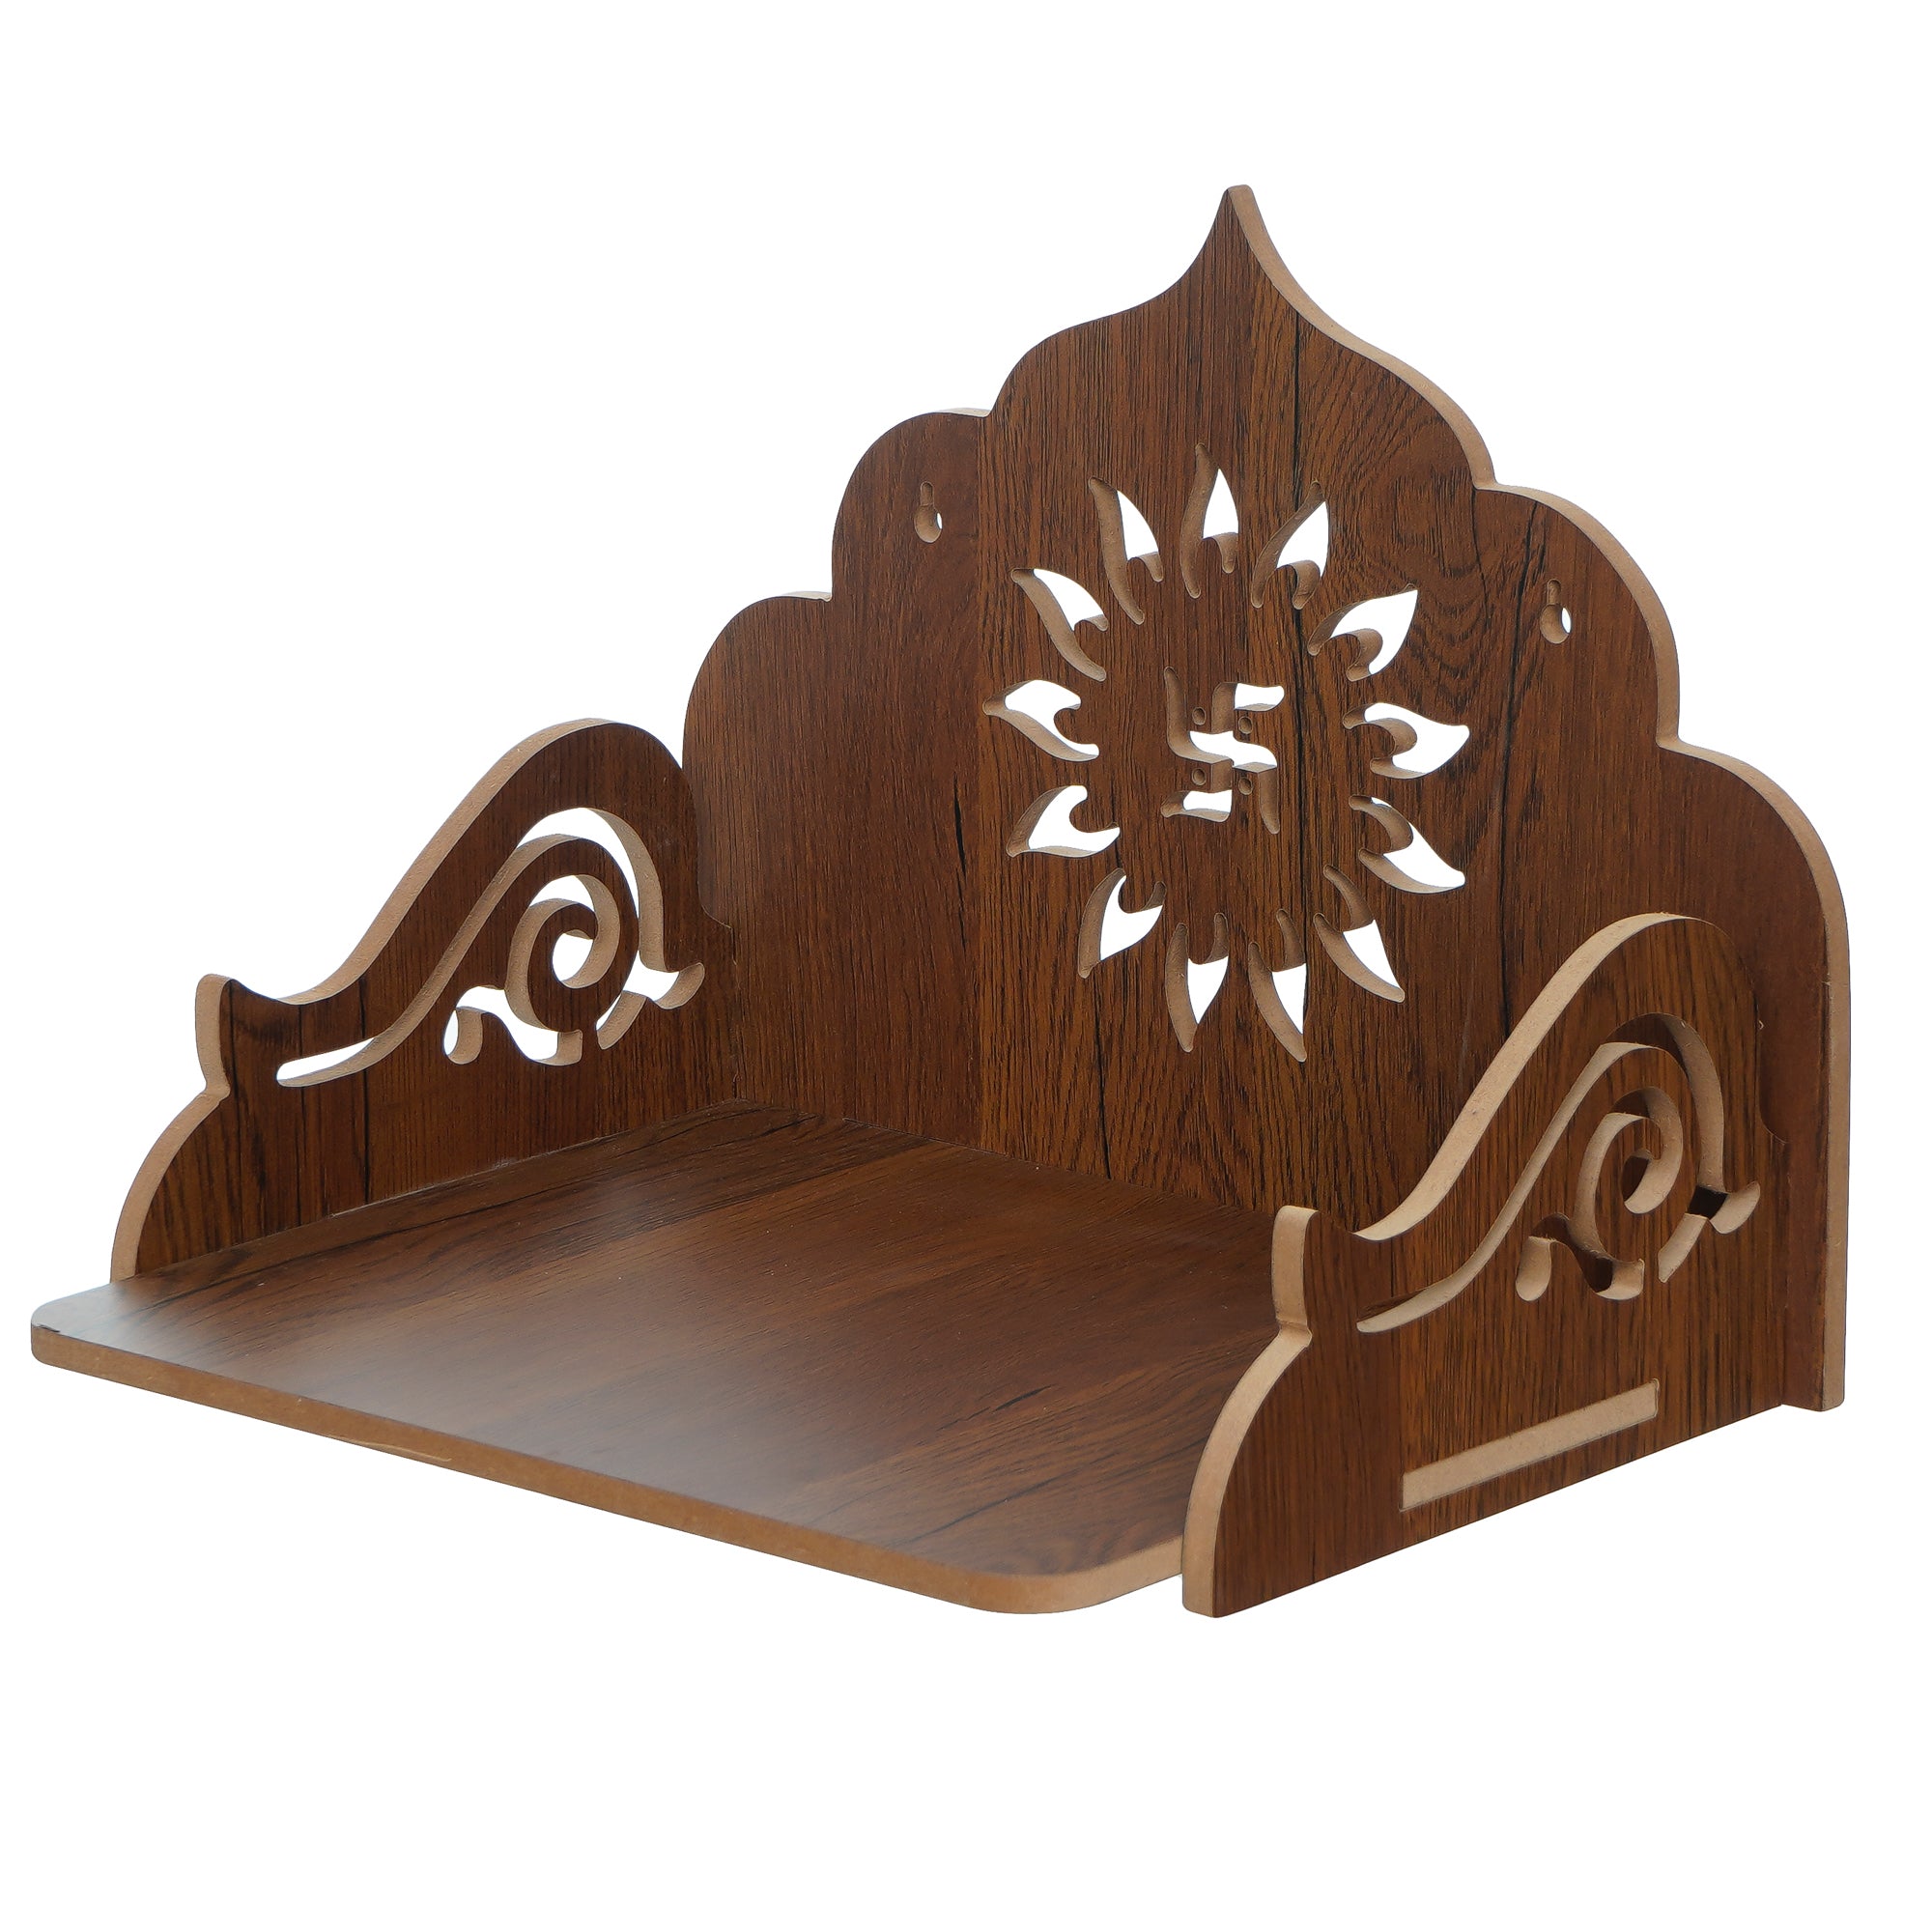 Swastik Design Laminated Wood Pooja Temple/Mandir 4